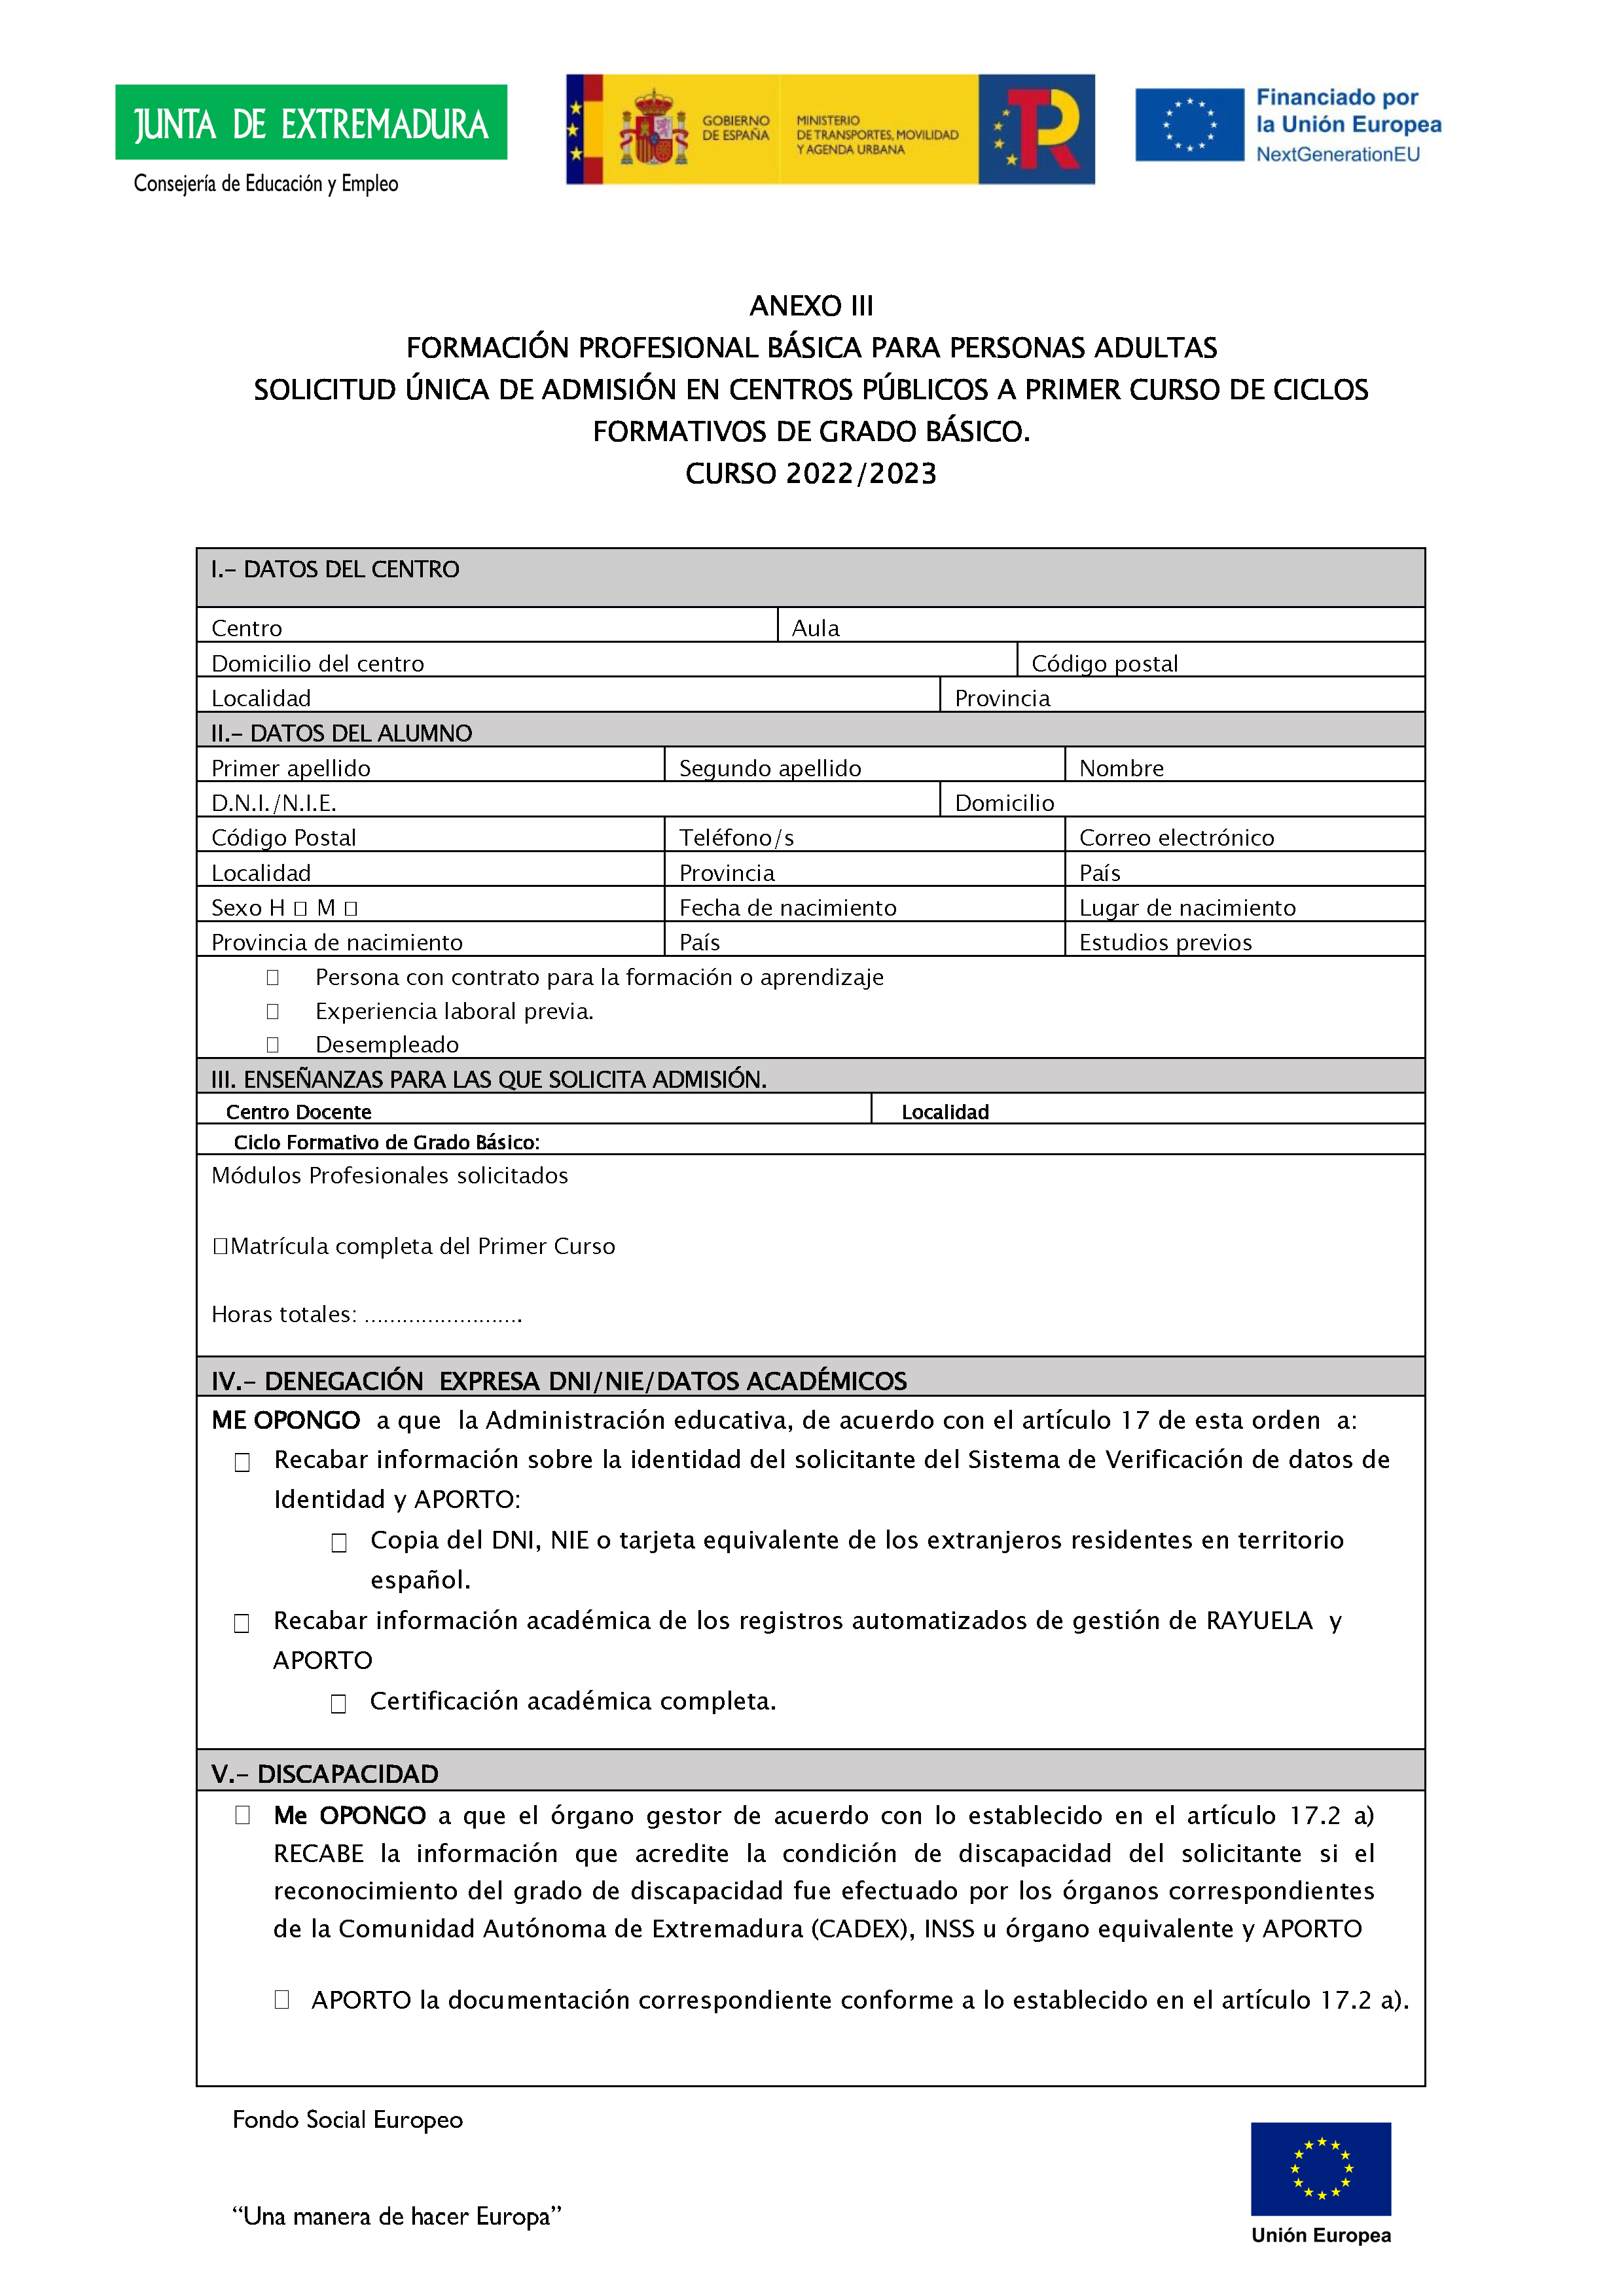 ANEXO IFORMACIÓN PROFESIONAL BÁSICA// CICLOS FORMATIVOS DE GRADO BÁSICO PARA PERSONAS ADULTAS Pag 3